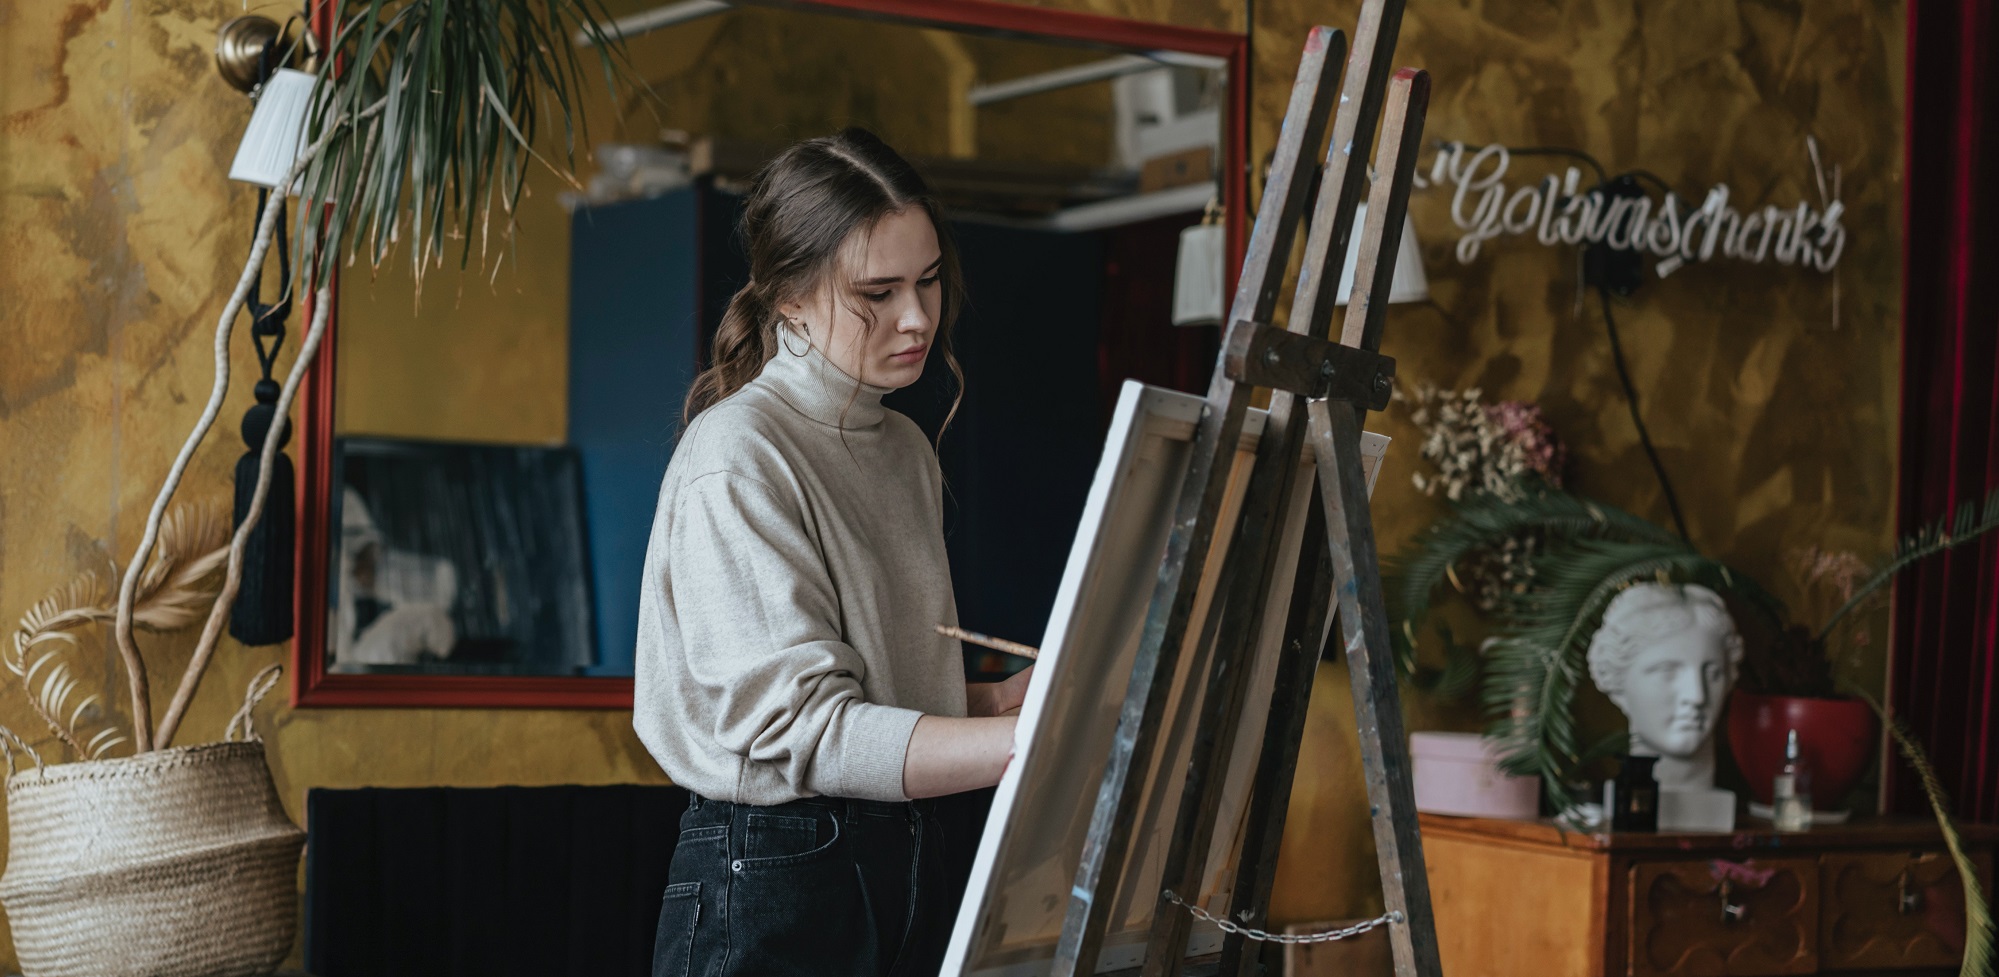 Eine junge Frau malt auf einer Staffelei.